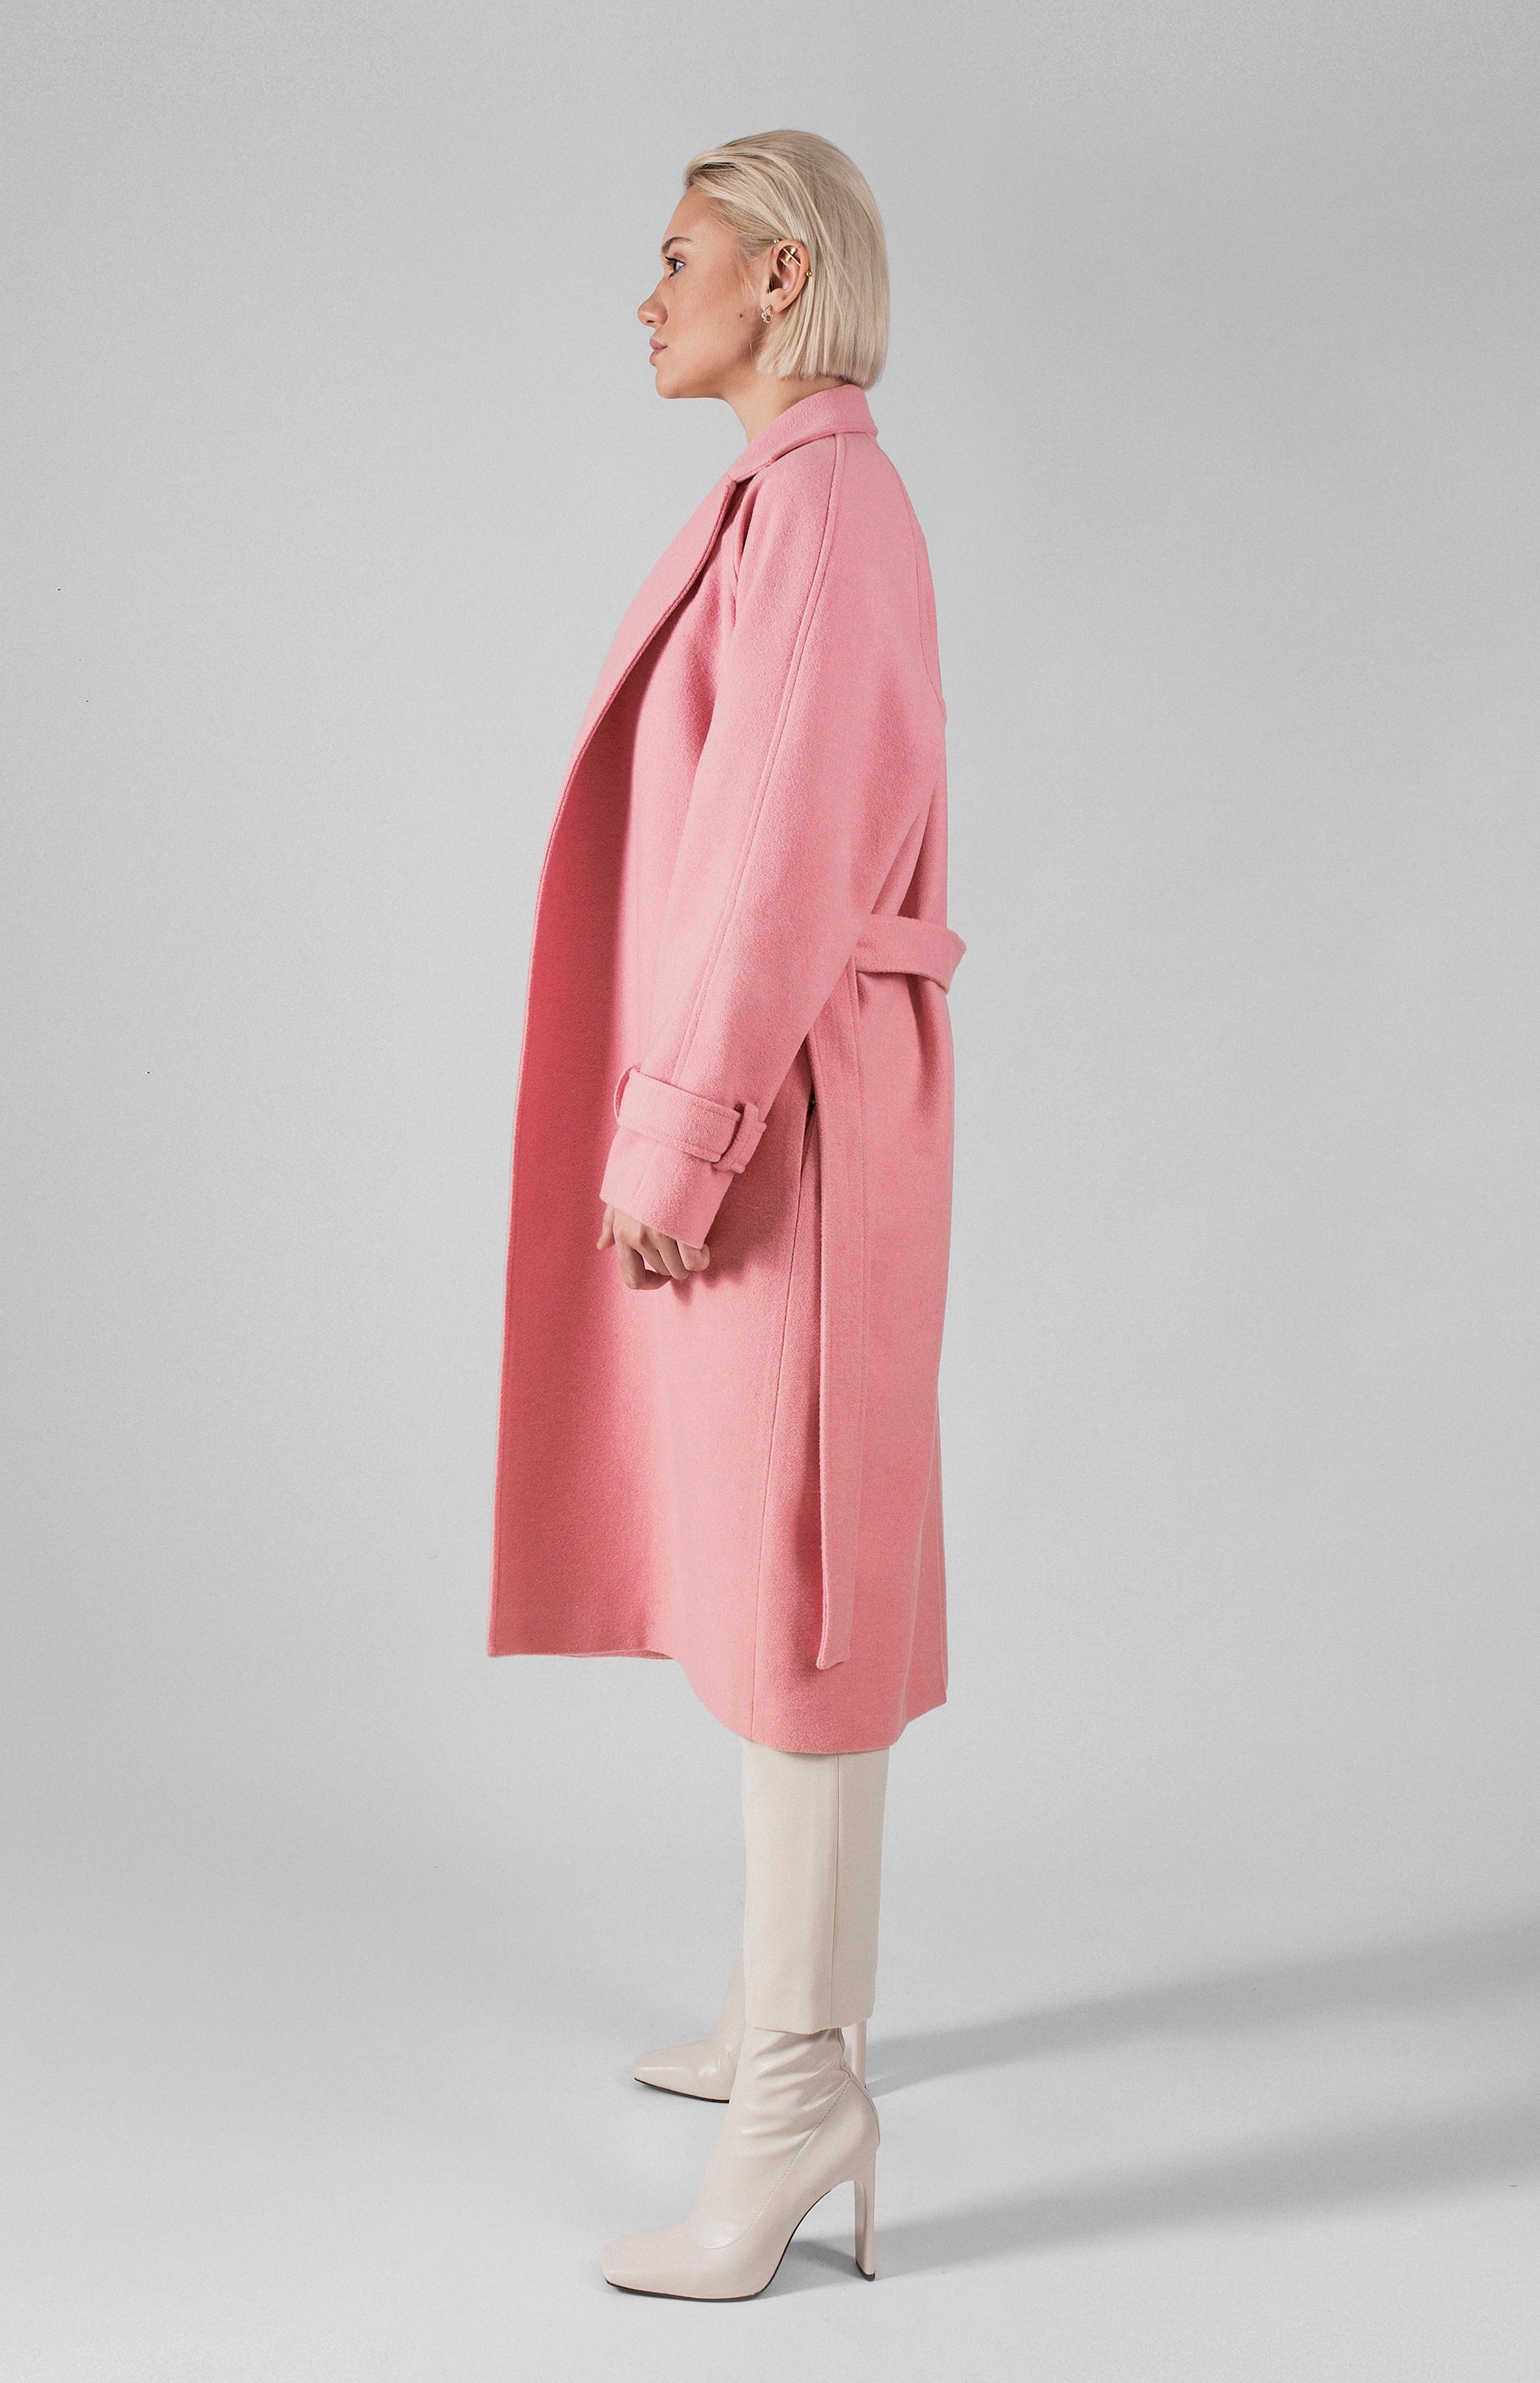 ROSA coat